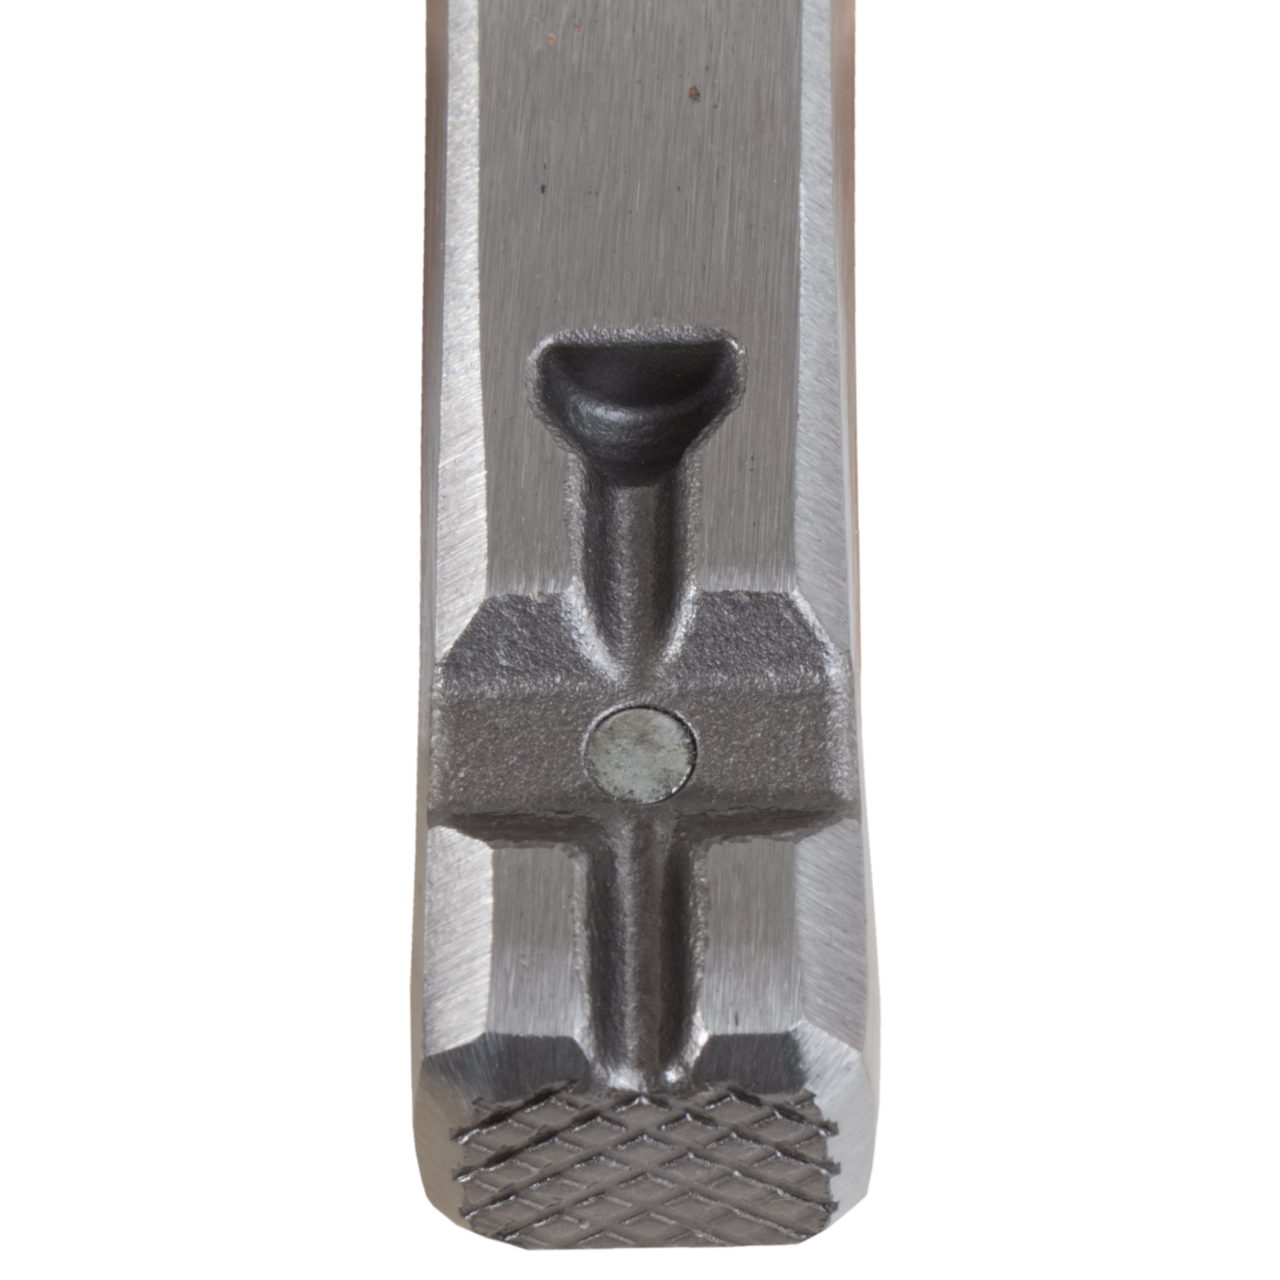 Latthammer 600 g, Picard, Schlosserwerkzeug, Werkzeuge, Online-Shop